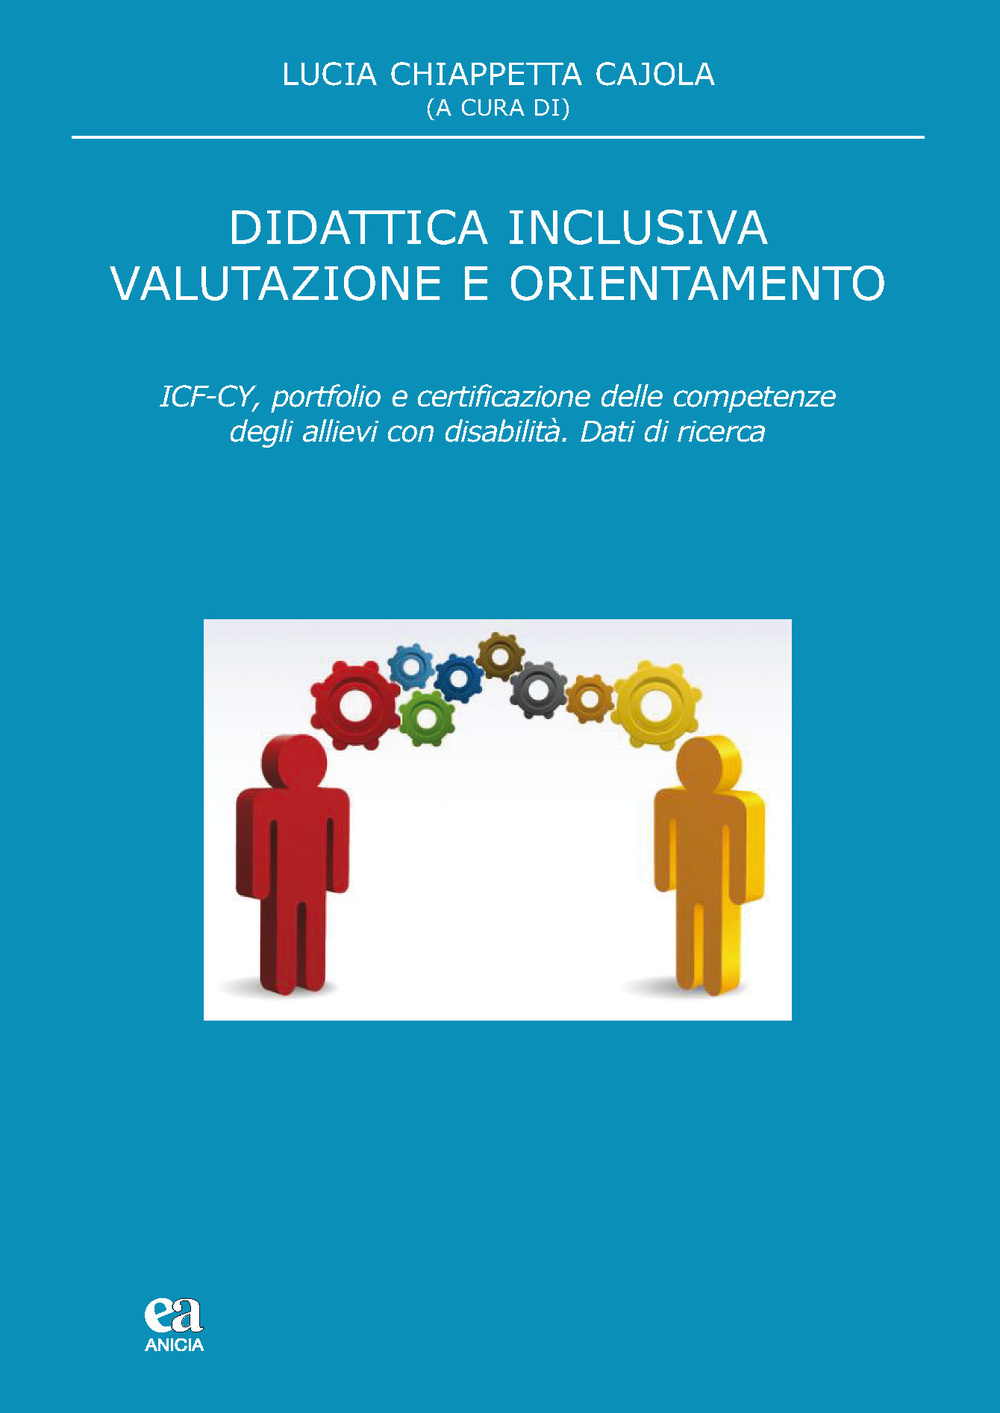 Didattica inclusiva valutazione e orientamento. ICF-CY, portfolio e certificazione delle competenze degli allievi con disabilità